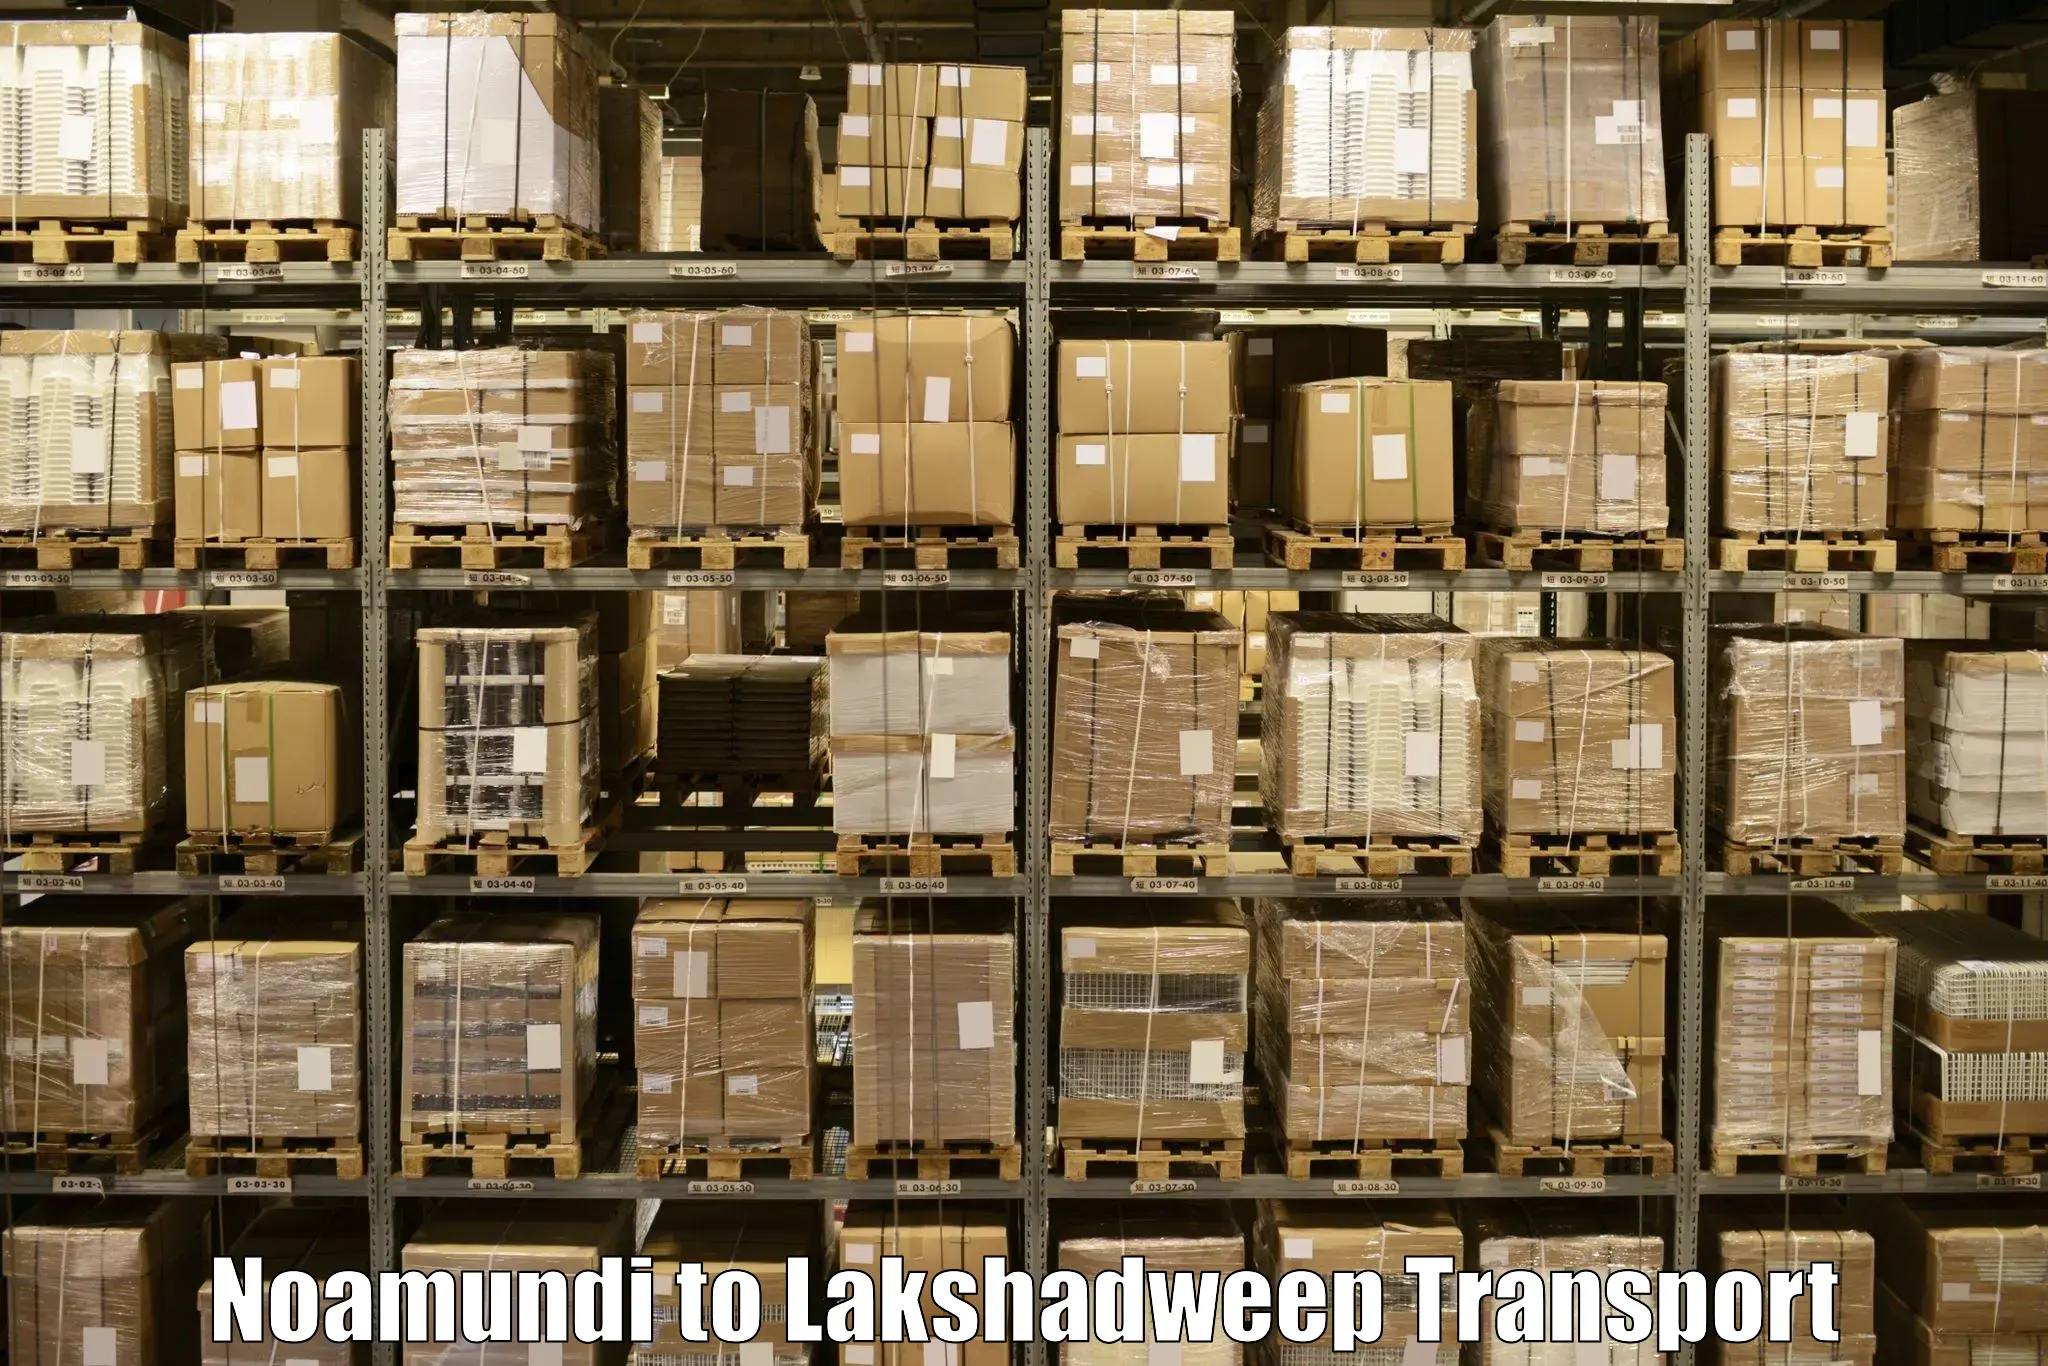 Express transport services Noamundi to Lakshadweep